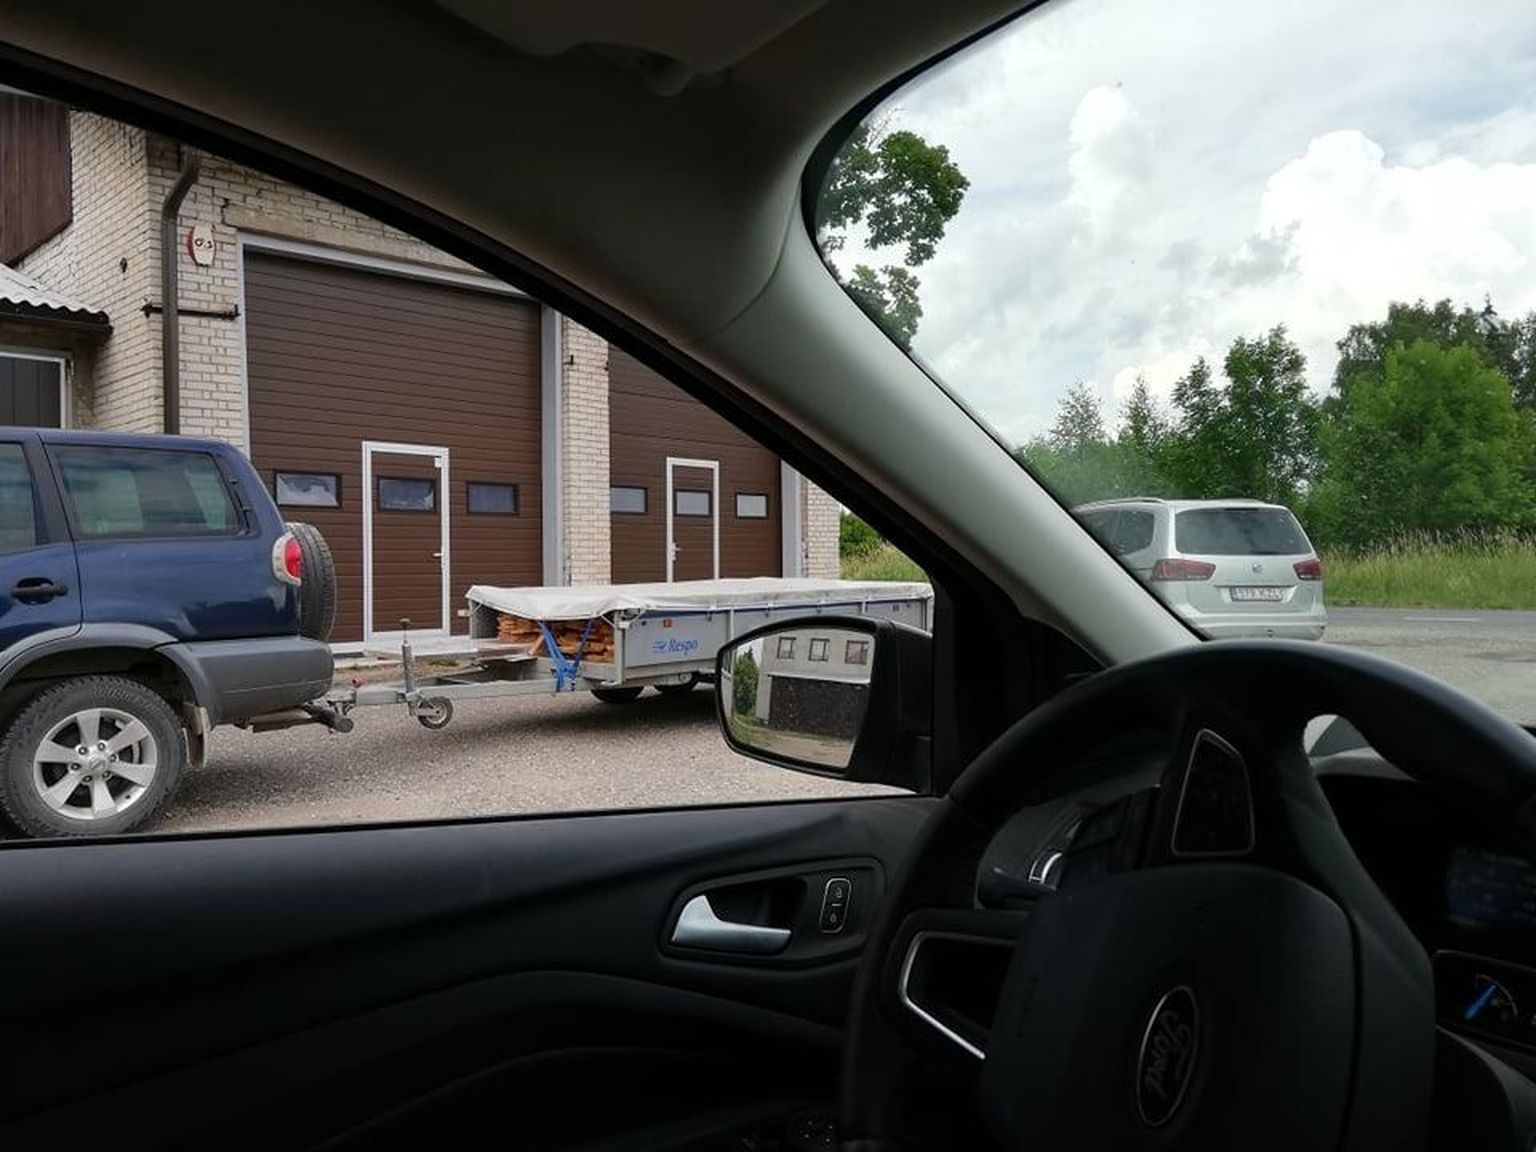 Võrumaa kutsehariduskeskuse direktori Tanel Linnuse auto koos laudu täis järelkäruga kooli garaažide juures.